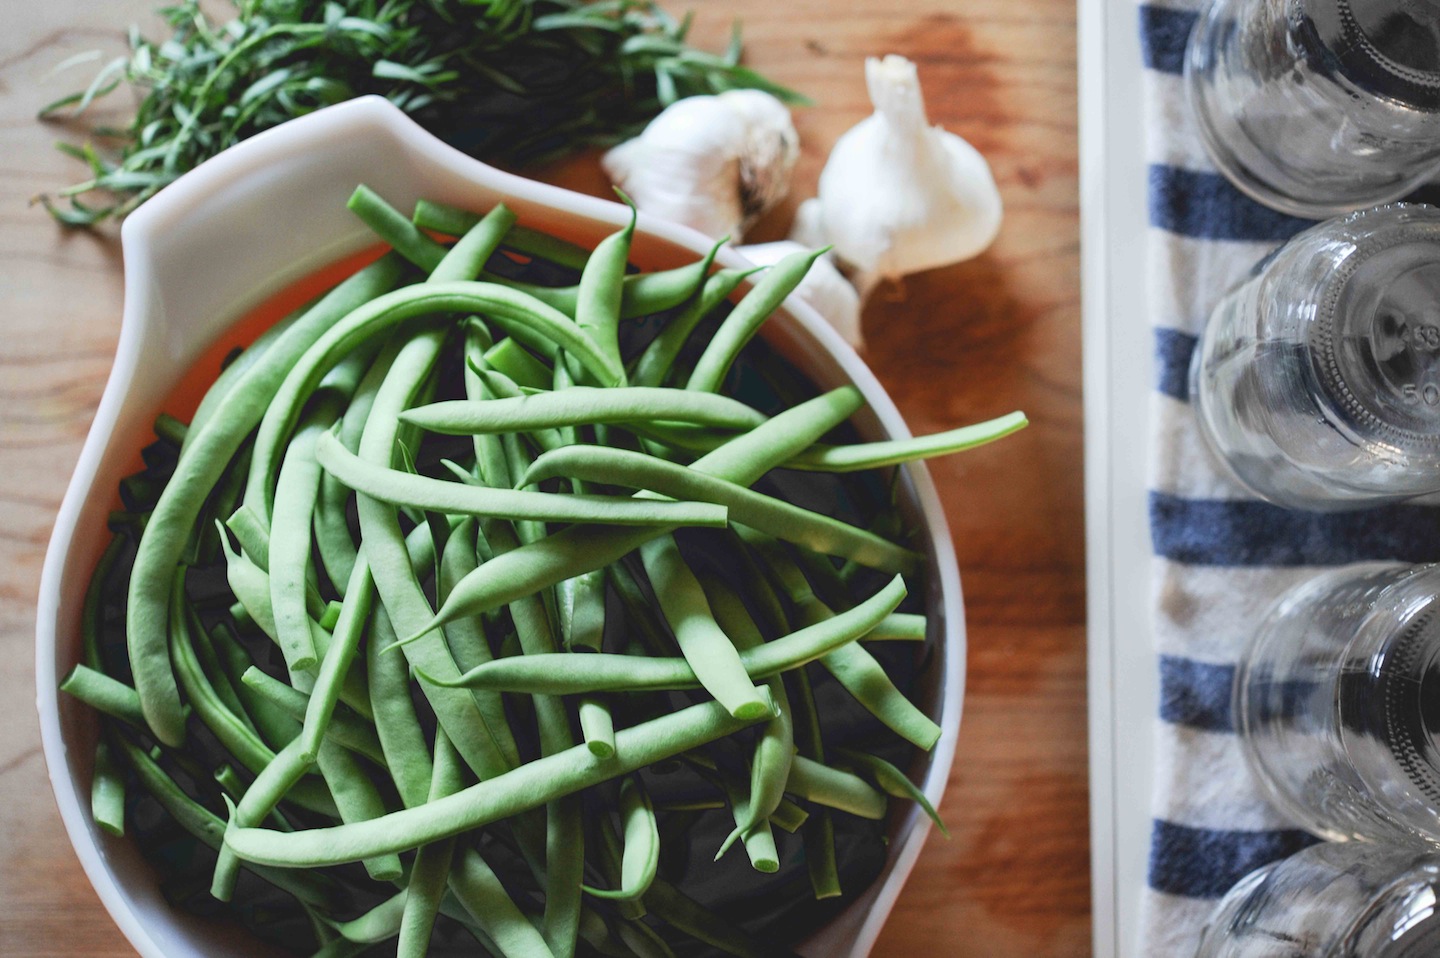 pickling green beans.jpg